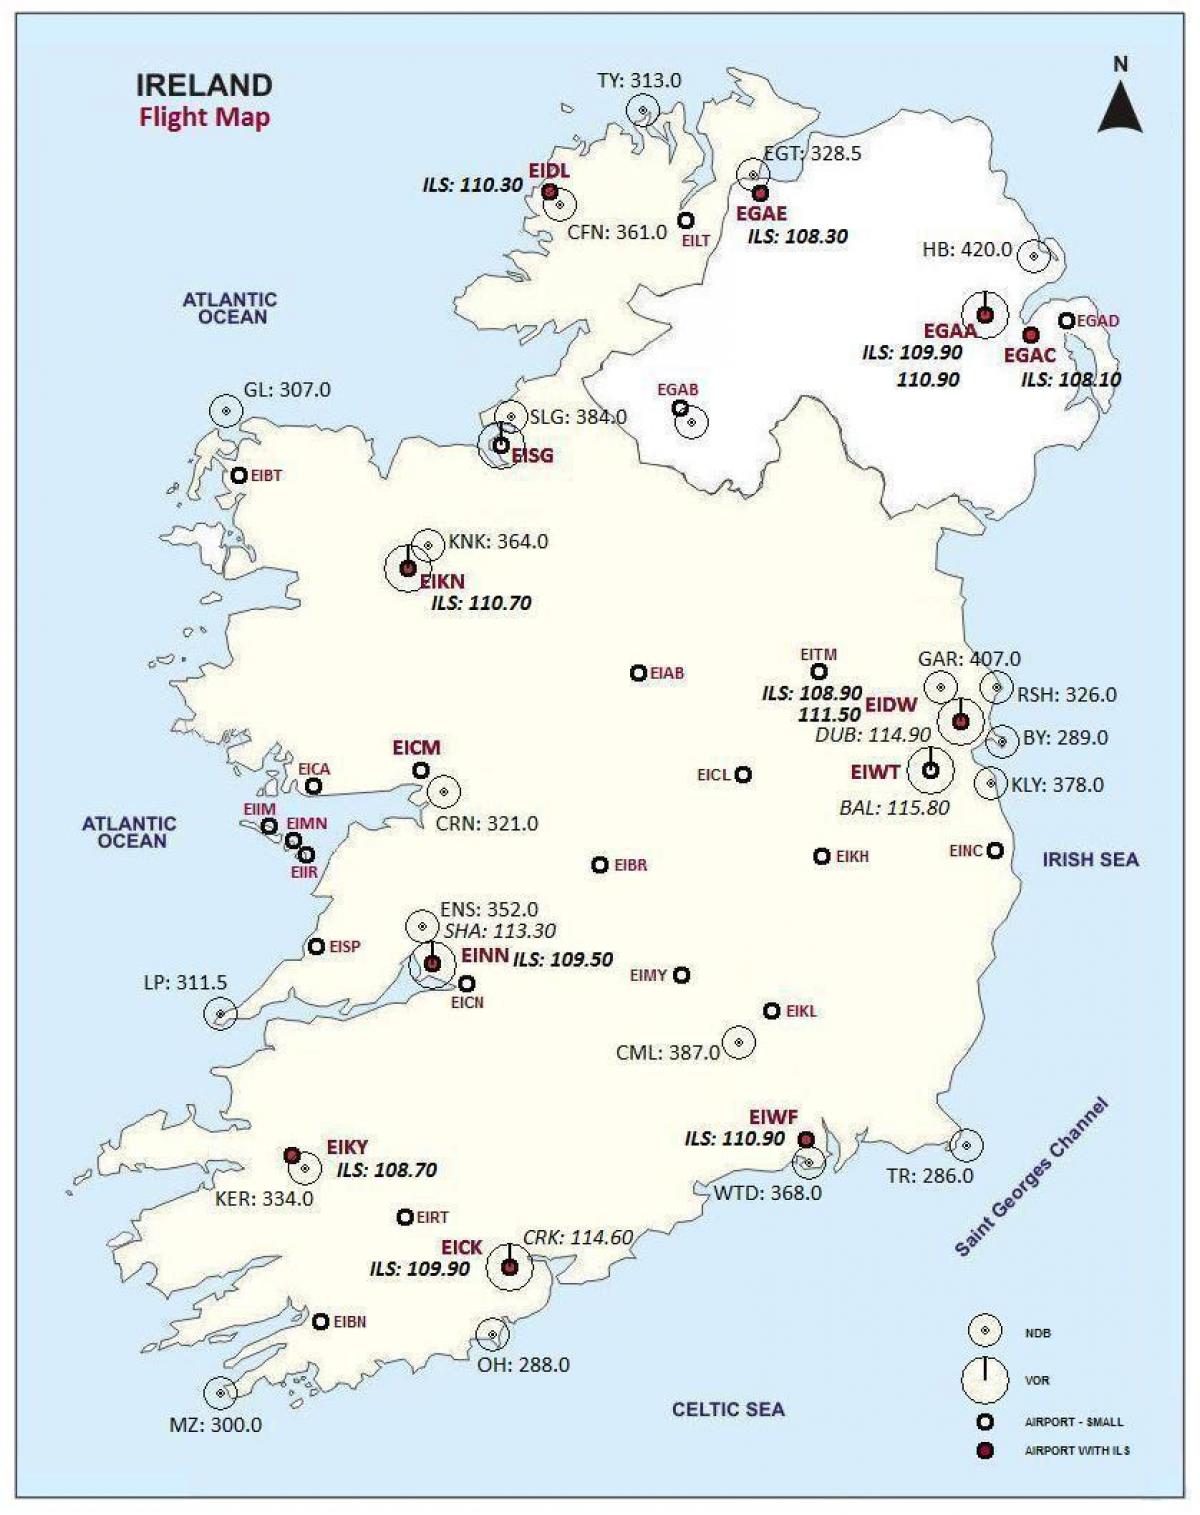 χάρτης της ιρλανδίας δείχνει αεροδρόμια